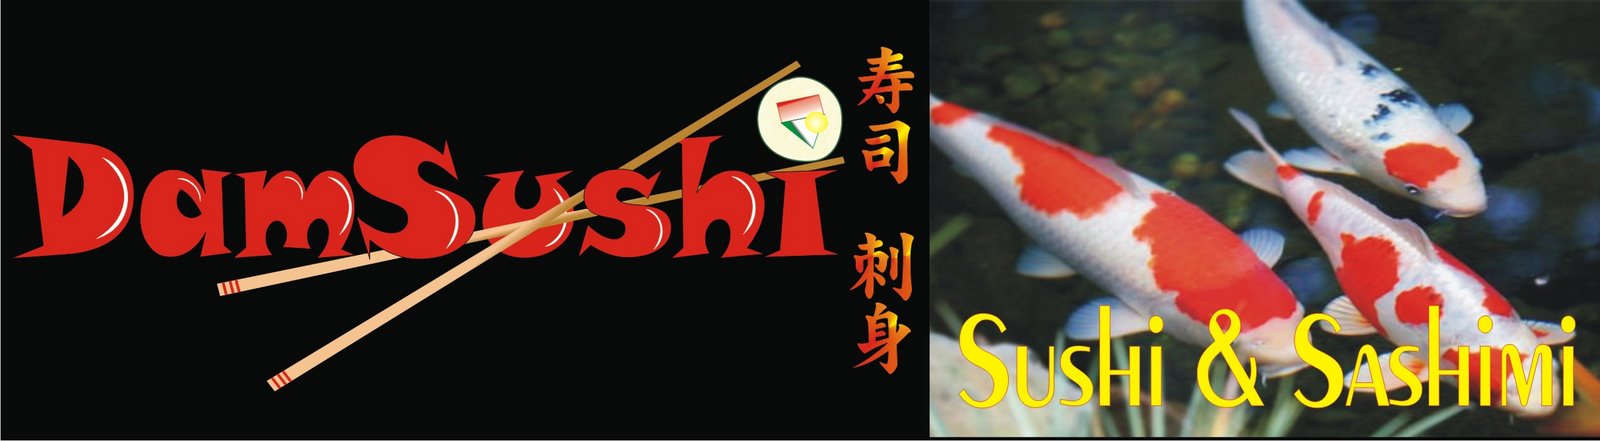 Dam Sushi